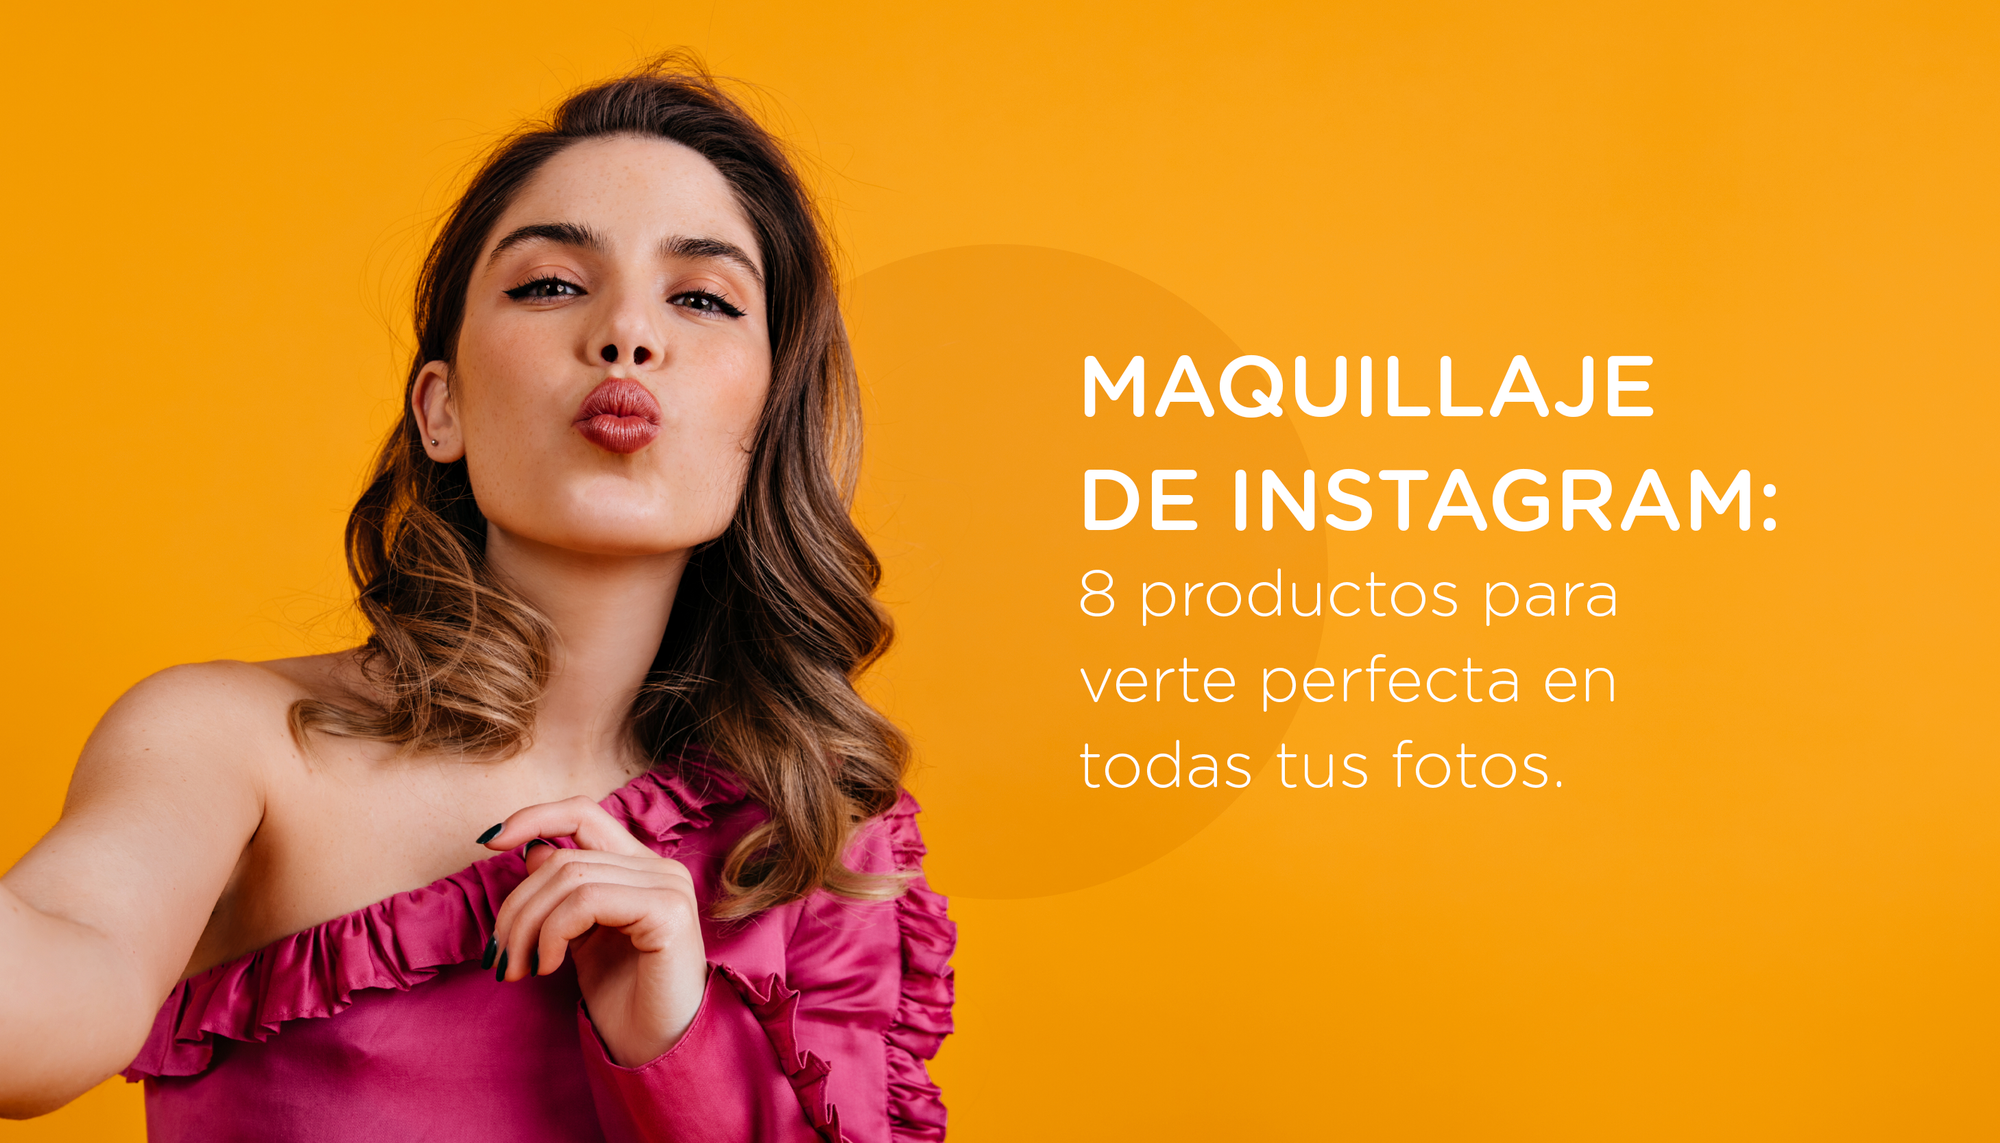 Maquillaje de Instagram: 8 productos para verte perfecta en todas tus fotos